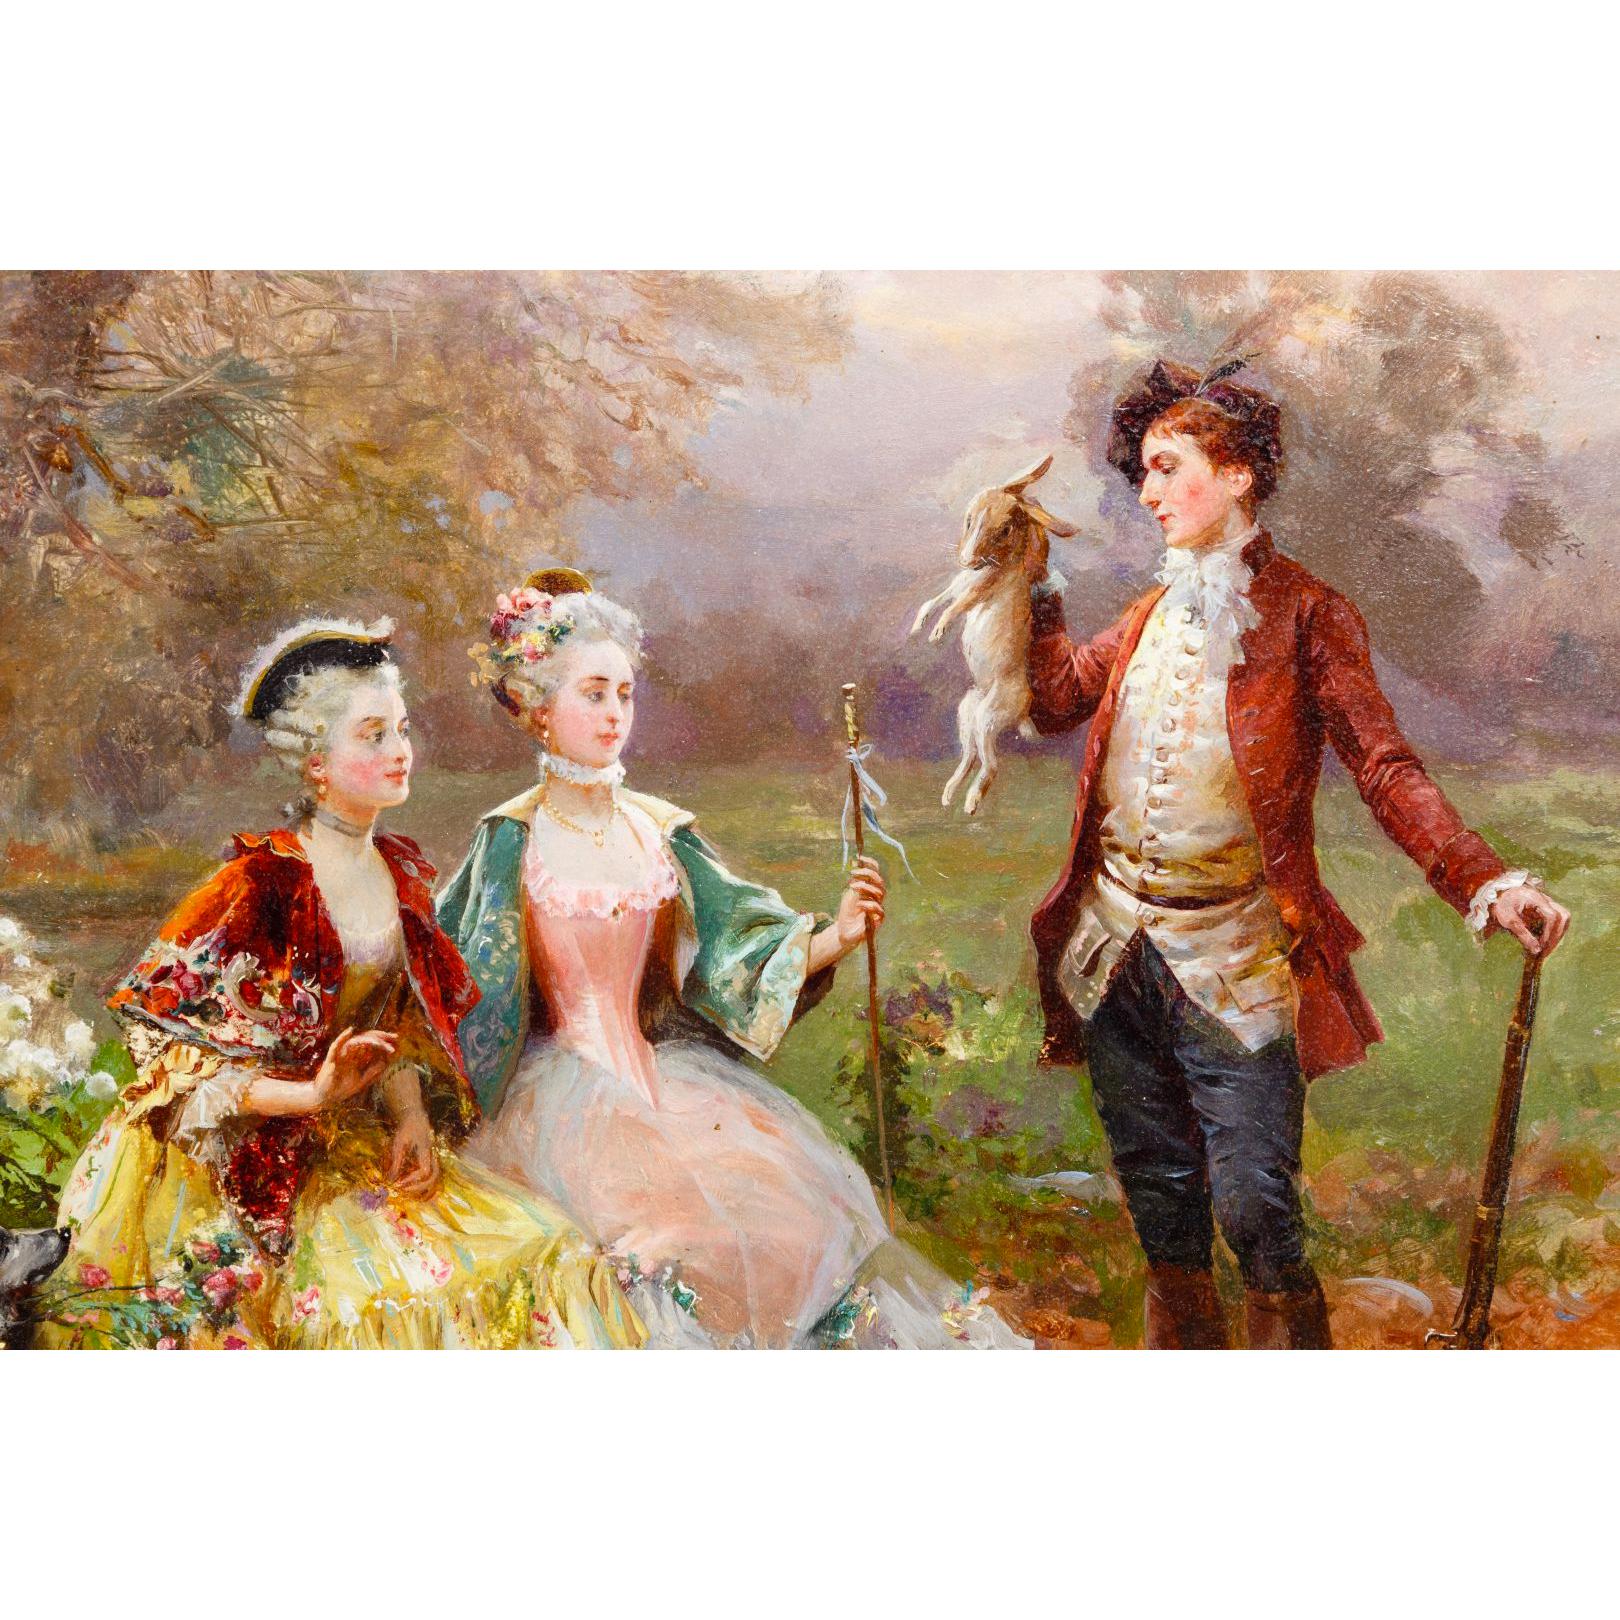 Image finement détaillée de deux dames dans un jardin, un chasseur avec du gibier, deux serviteurs et des chaises à porteurs en arrière-plan. Signé 